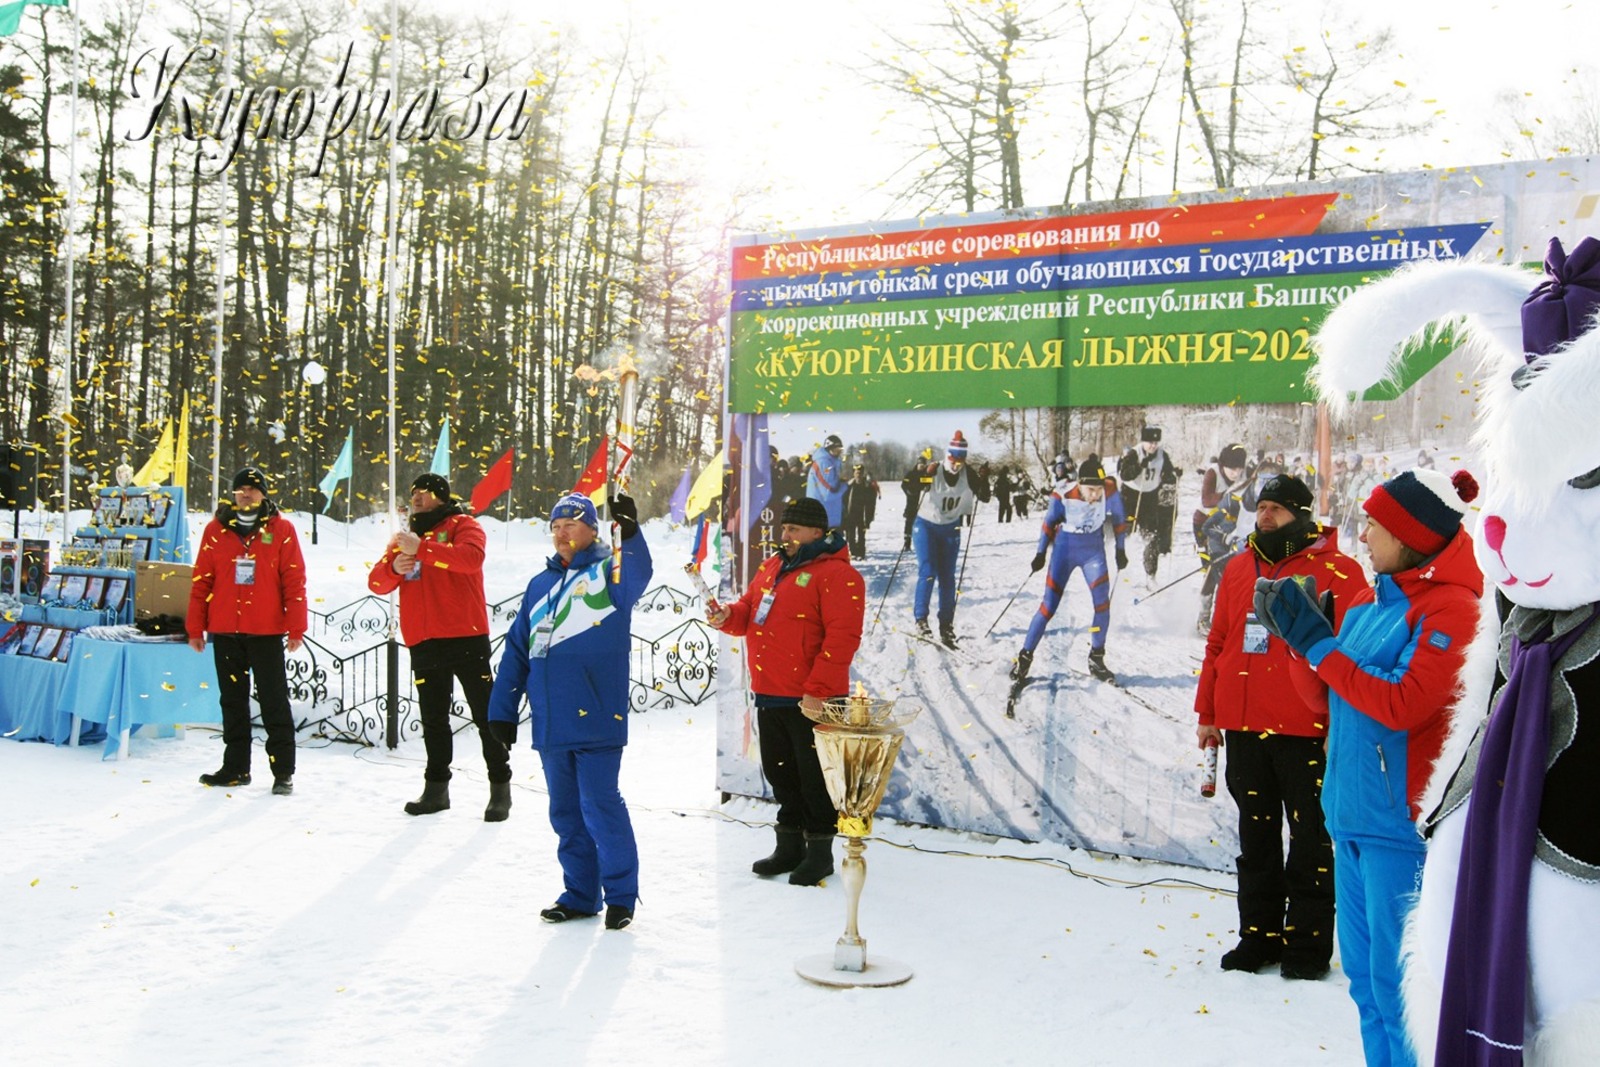 Игоря Хлопотова  Пусть этот олимпийский огонь сопровождает участников на их пути к победе.